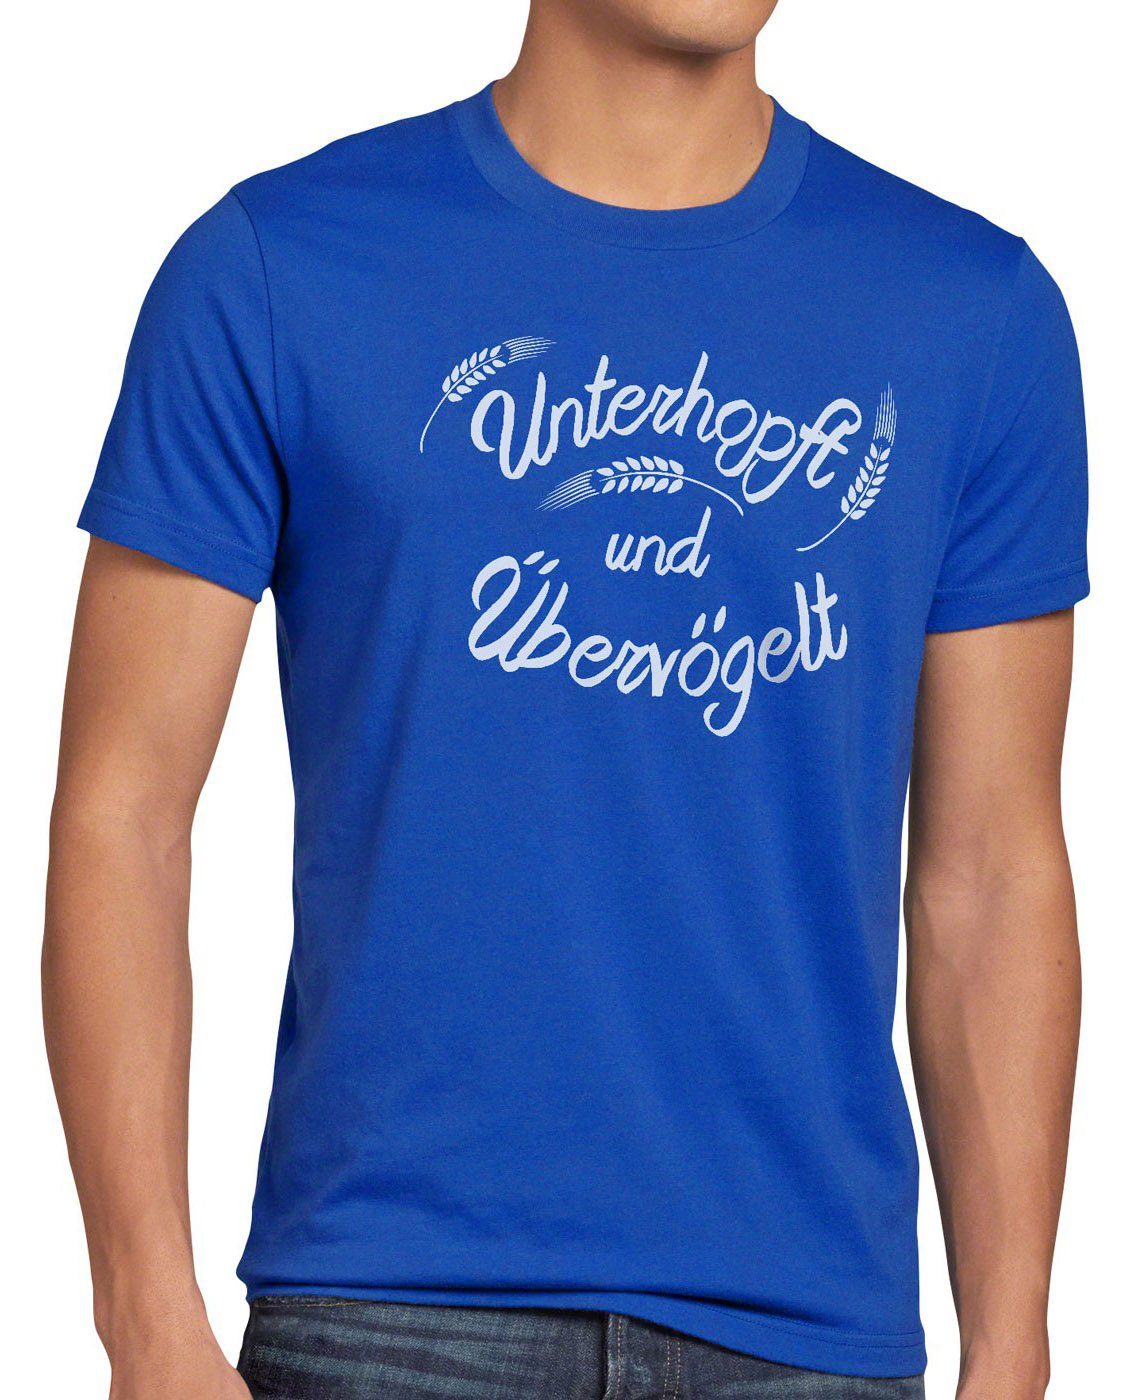 style3 Print-Shirt Herren T-Shirt Unterhopft Übervögelt Kult Shirt Funshirt Spruch Bier Malz Fun blau